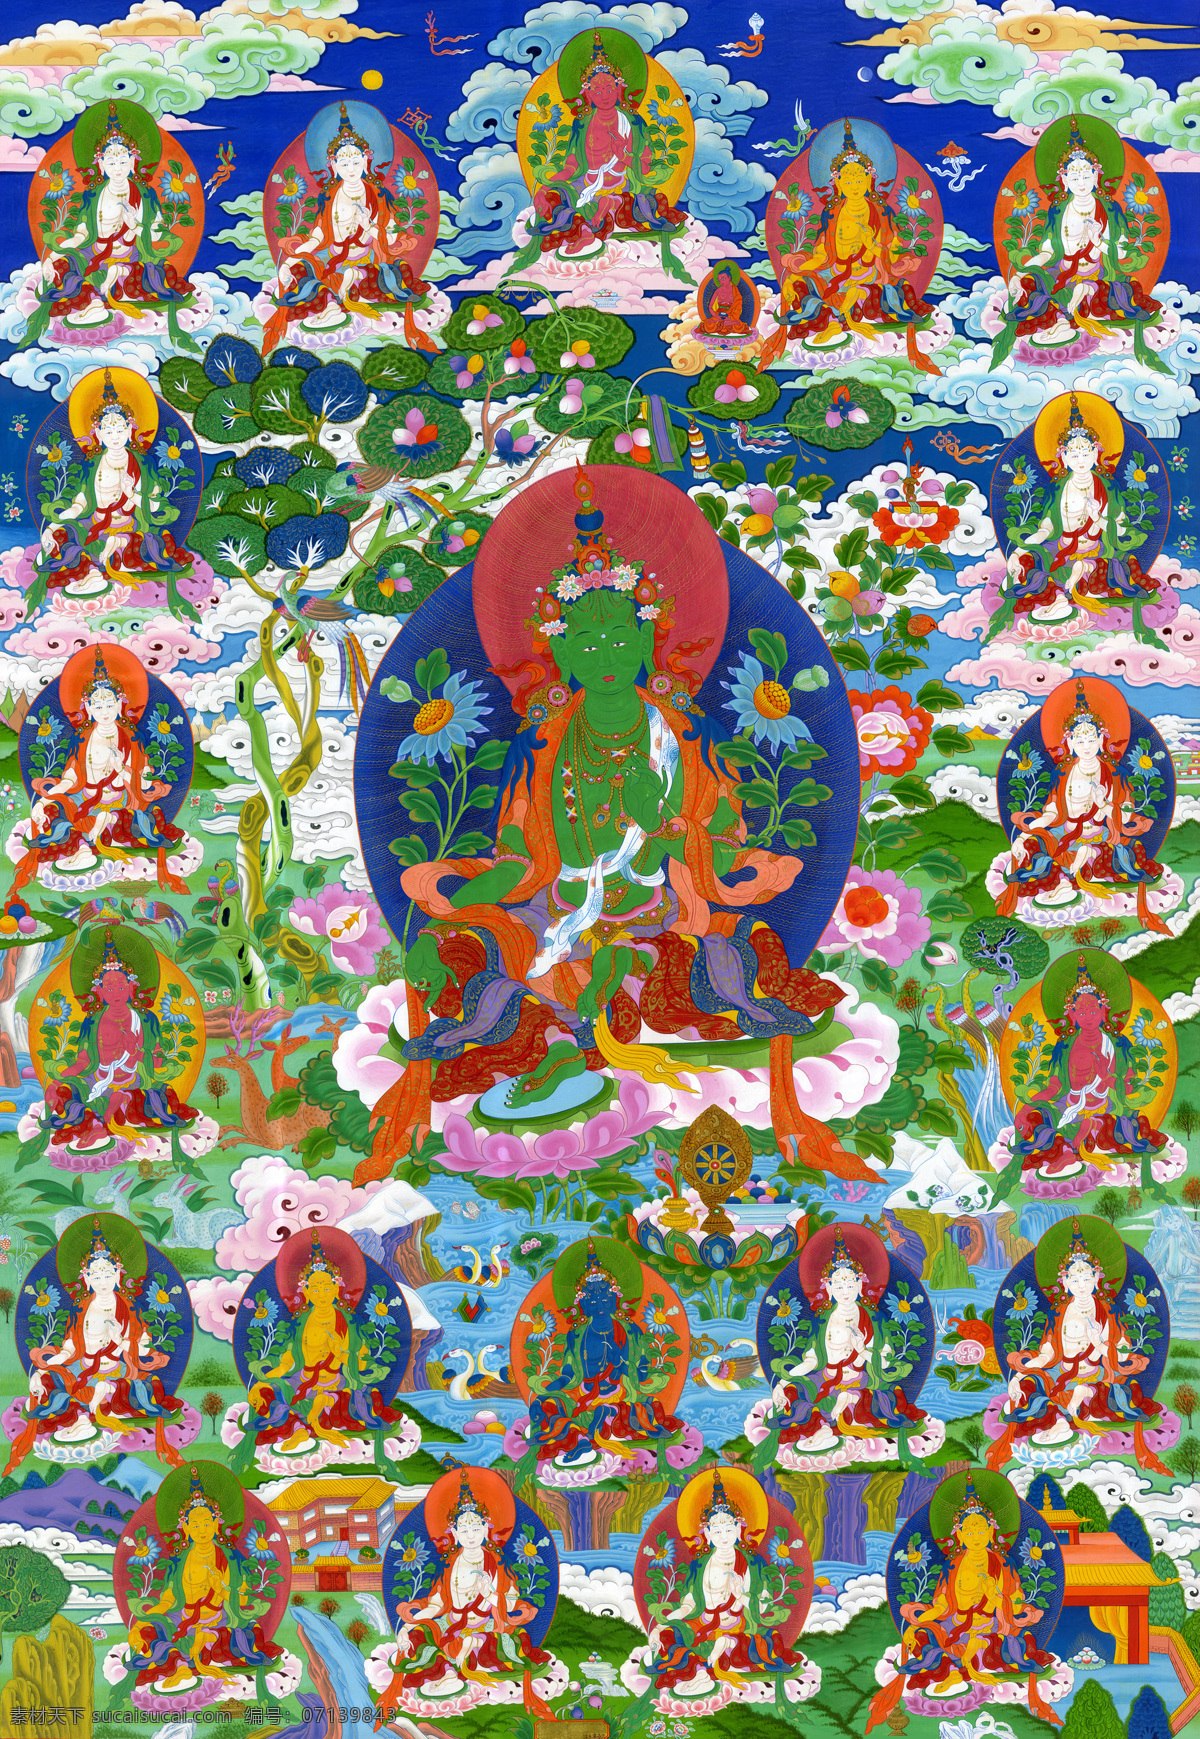 藏传佛教 佛 佛教 工艺 花纹 绘画 绘画书法 民族 唐卡 宗教 宗教信仰 菩萨 西藏 卓玛菩萨 21度母 艺术 文化艺术